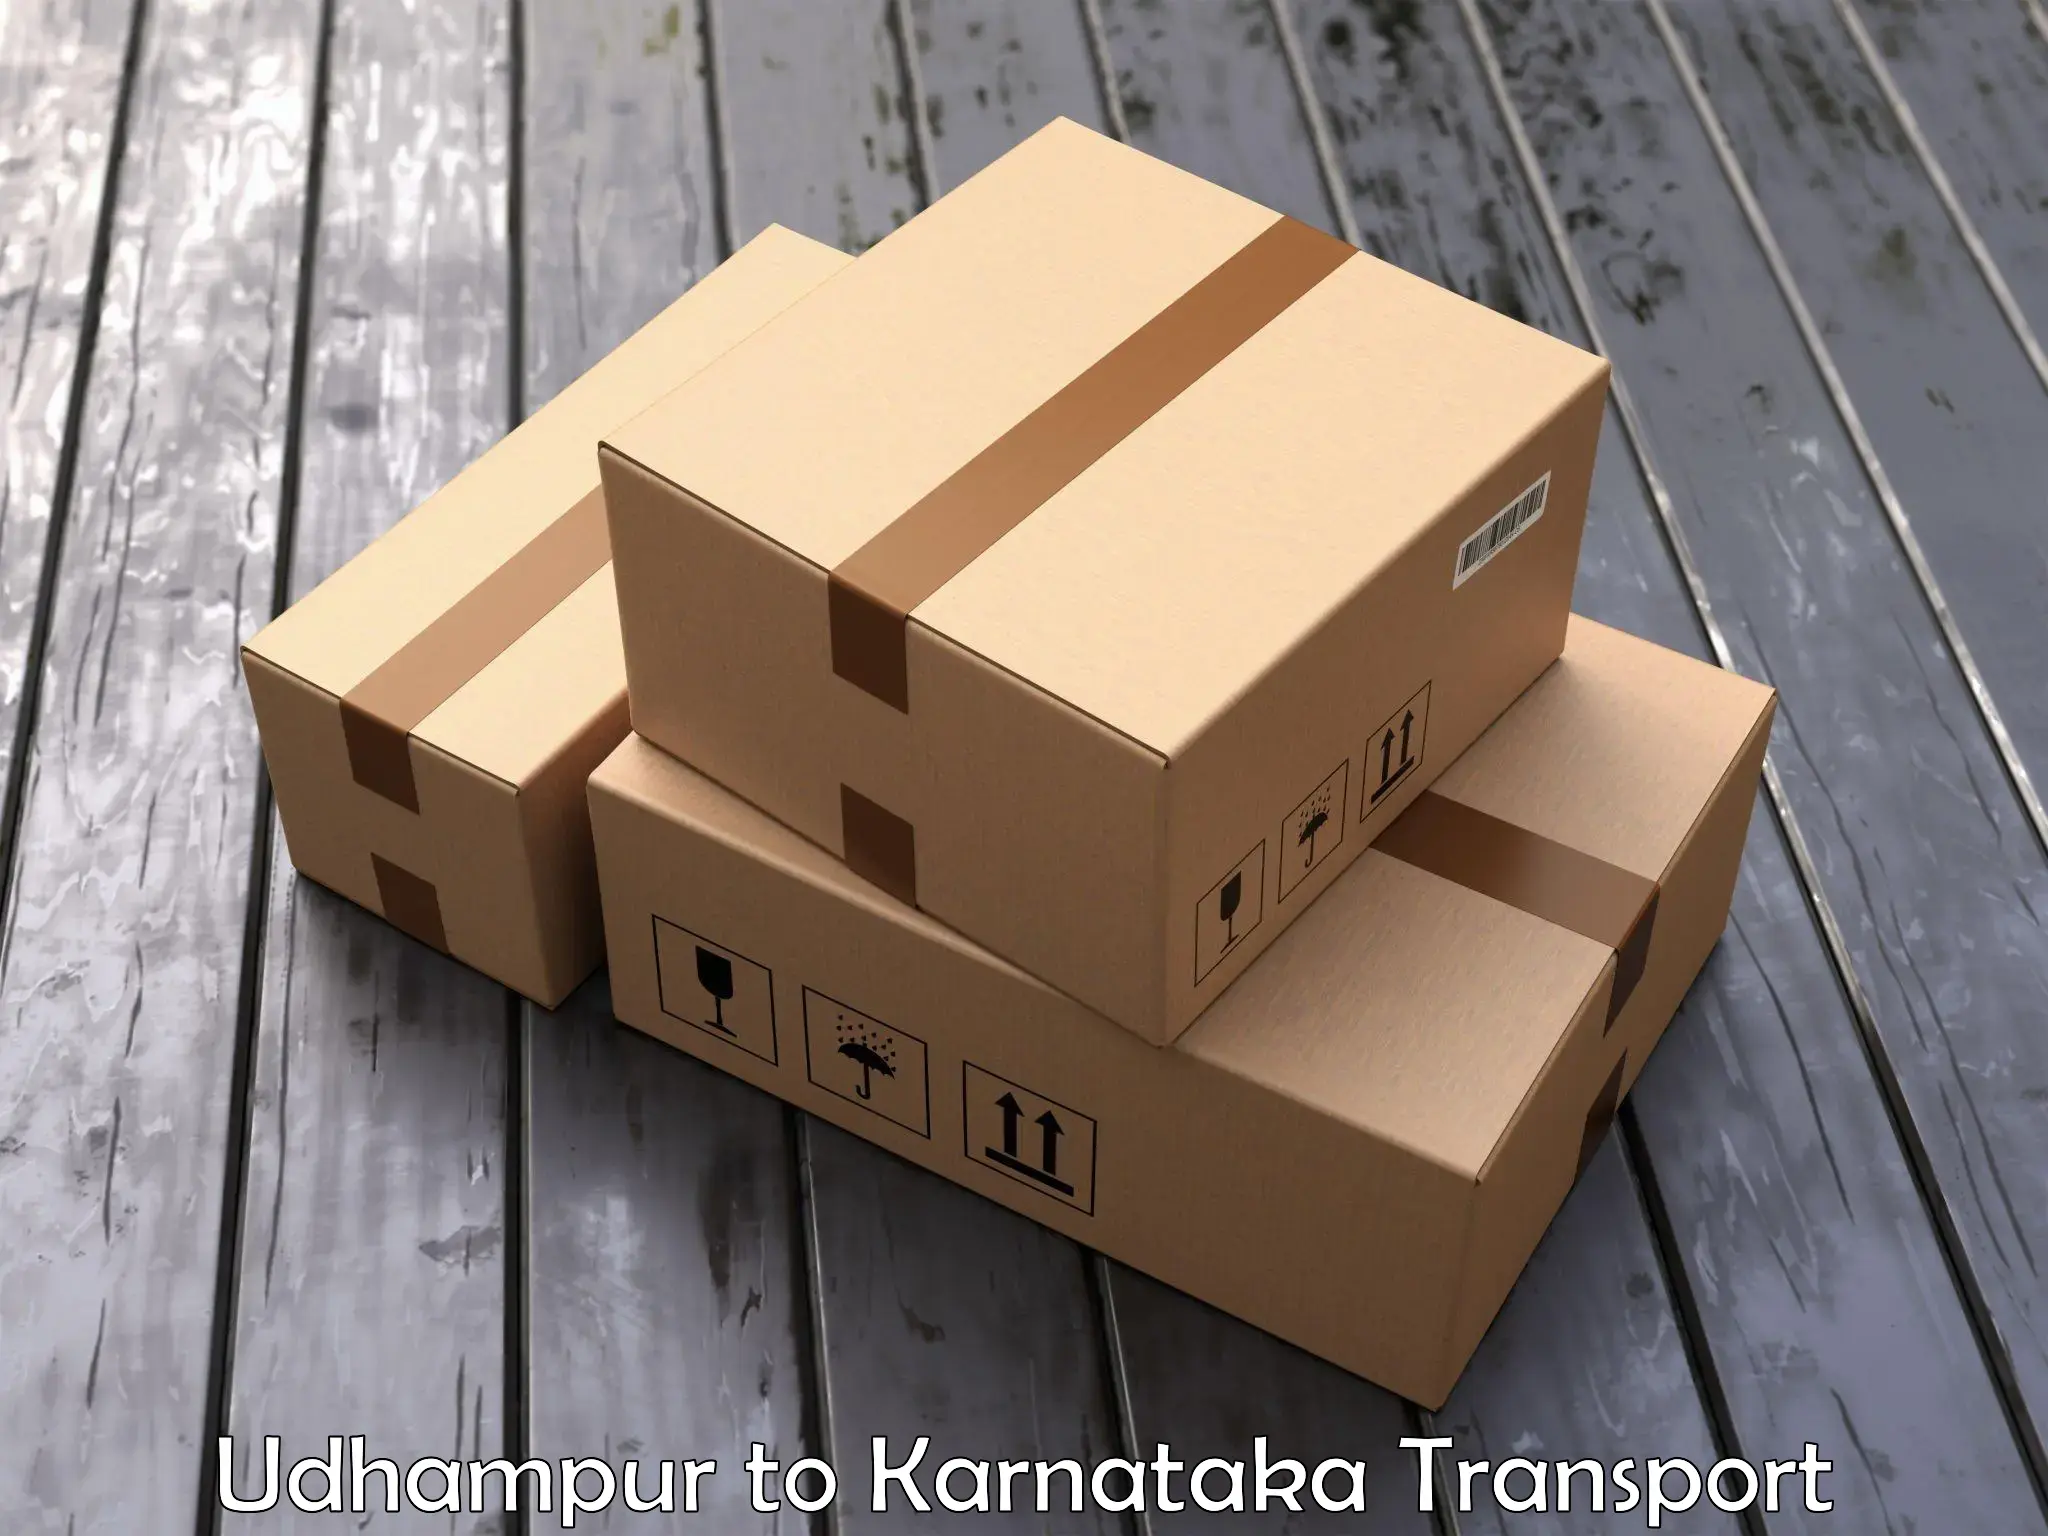 Road transport online services Udhampur to Mundgod